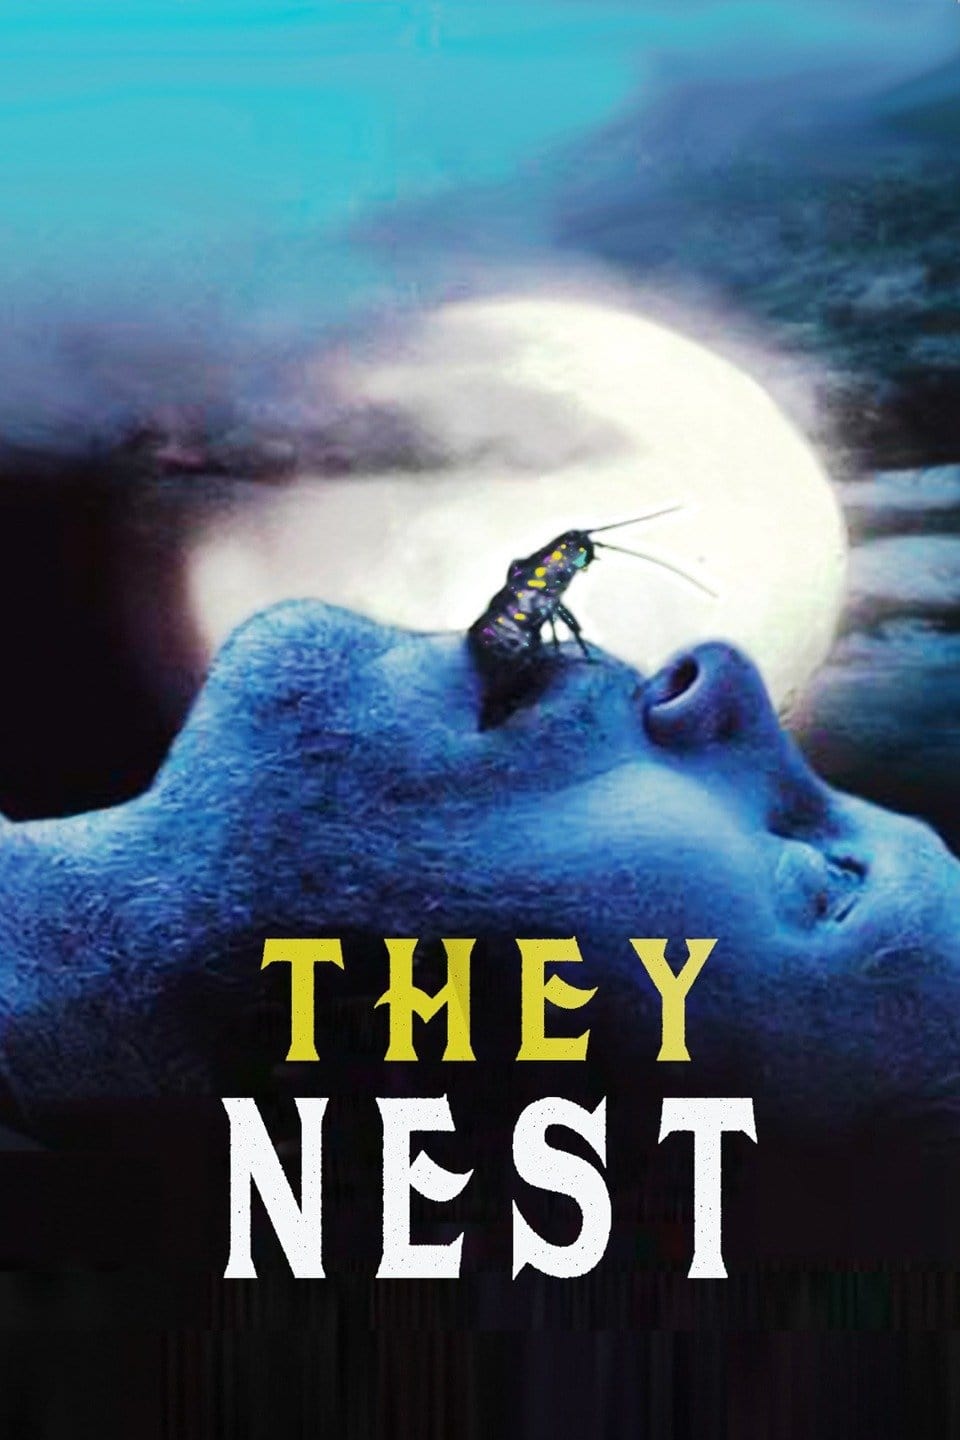 They Nest - Tödliche Brut